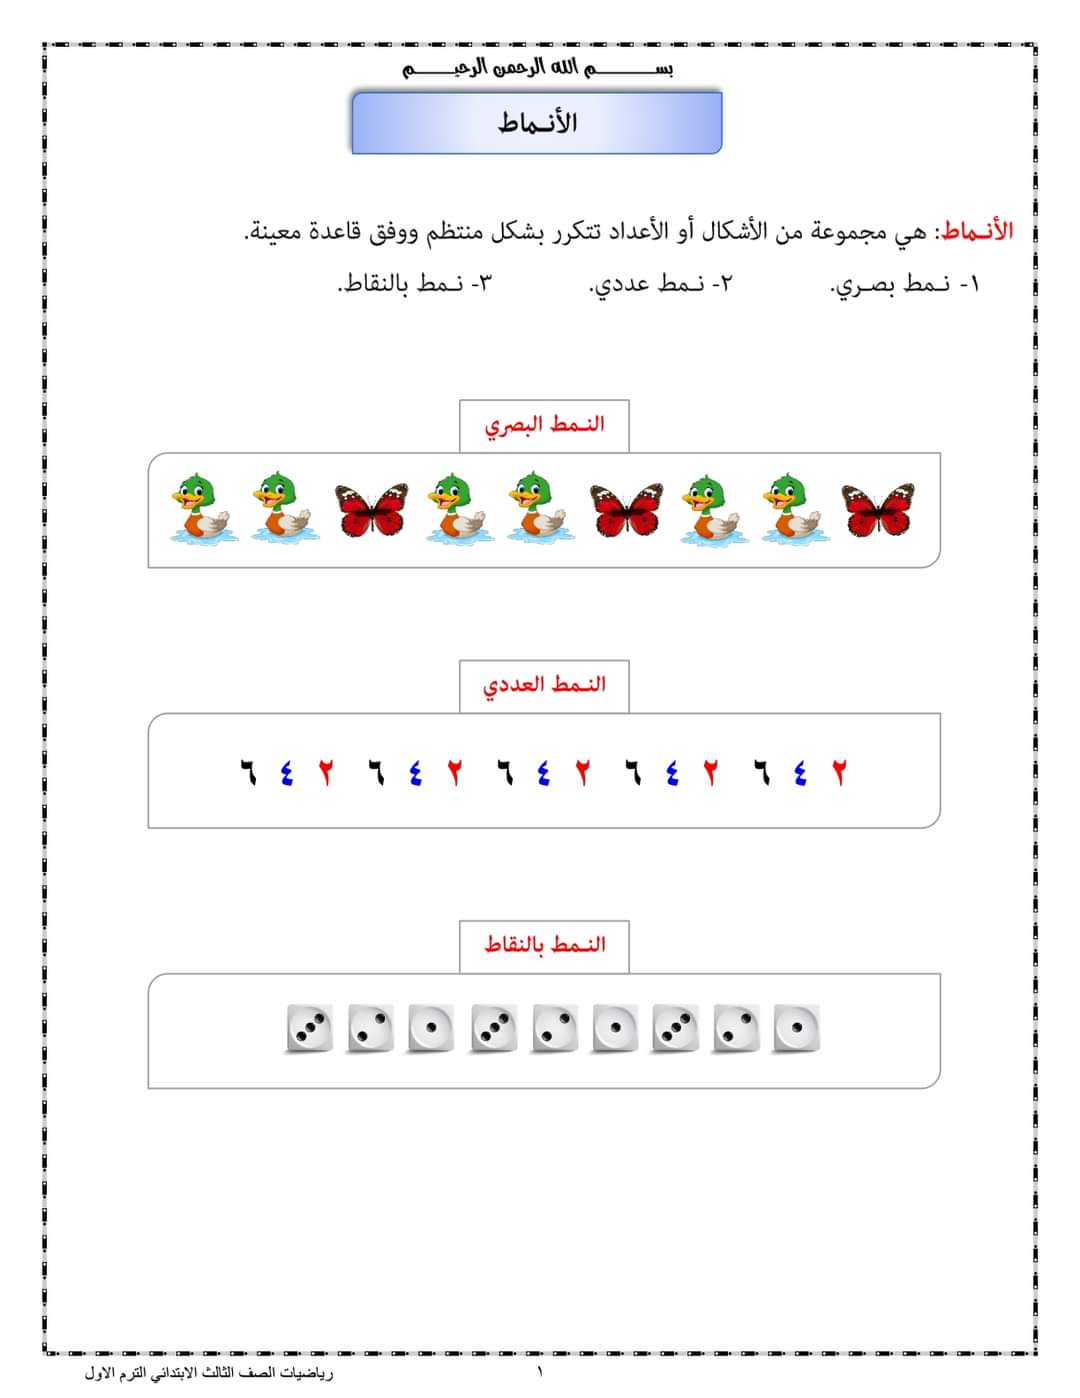 ملزمة المصطفى في الرياضيات للصف الثالث الابتدائي الترم الاول لمستر مصطفى الكيلاني